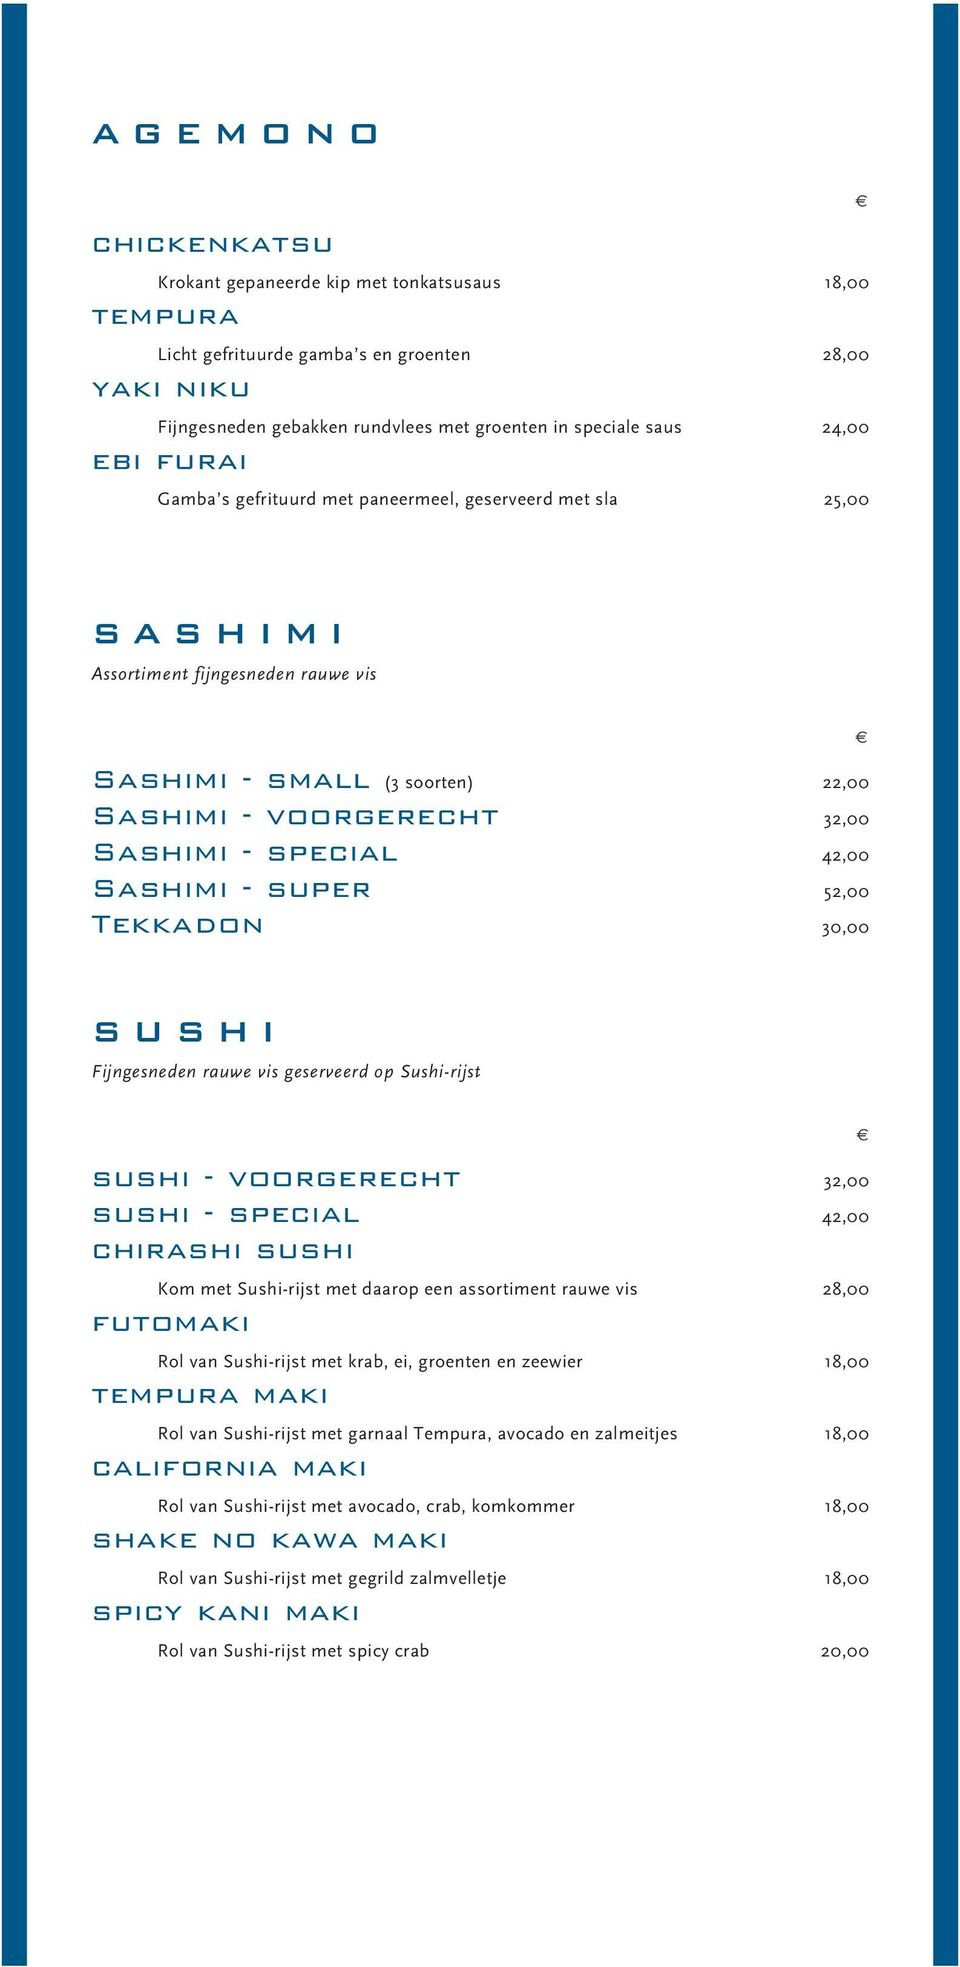 Sashimi - super 52,00 Tekkadon 30,00 SUSHI Fijngesneden rauwe vis geserveerd op Sushi-rijst sushi - voorgerecht 32,00 sushi - special 42,00 chirashi sushi Kom met Sushi-rijst met daarop een